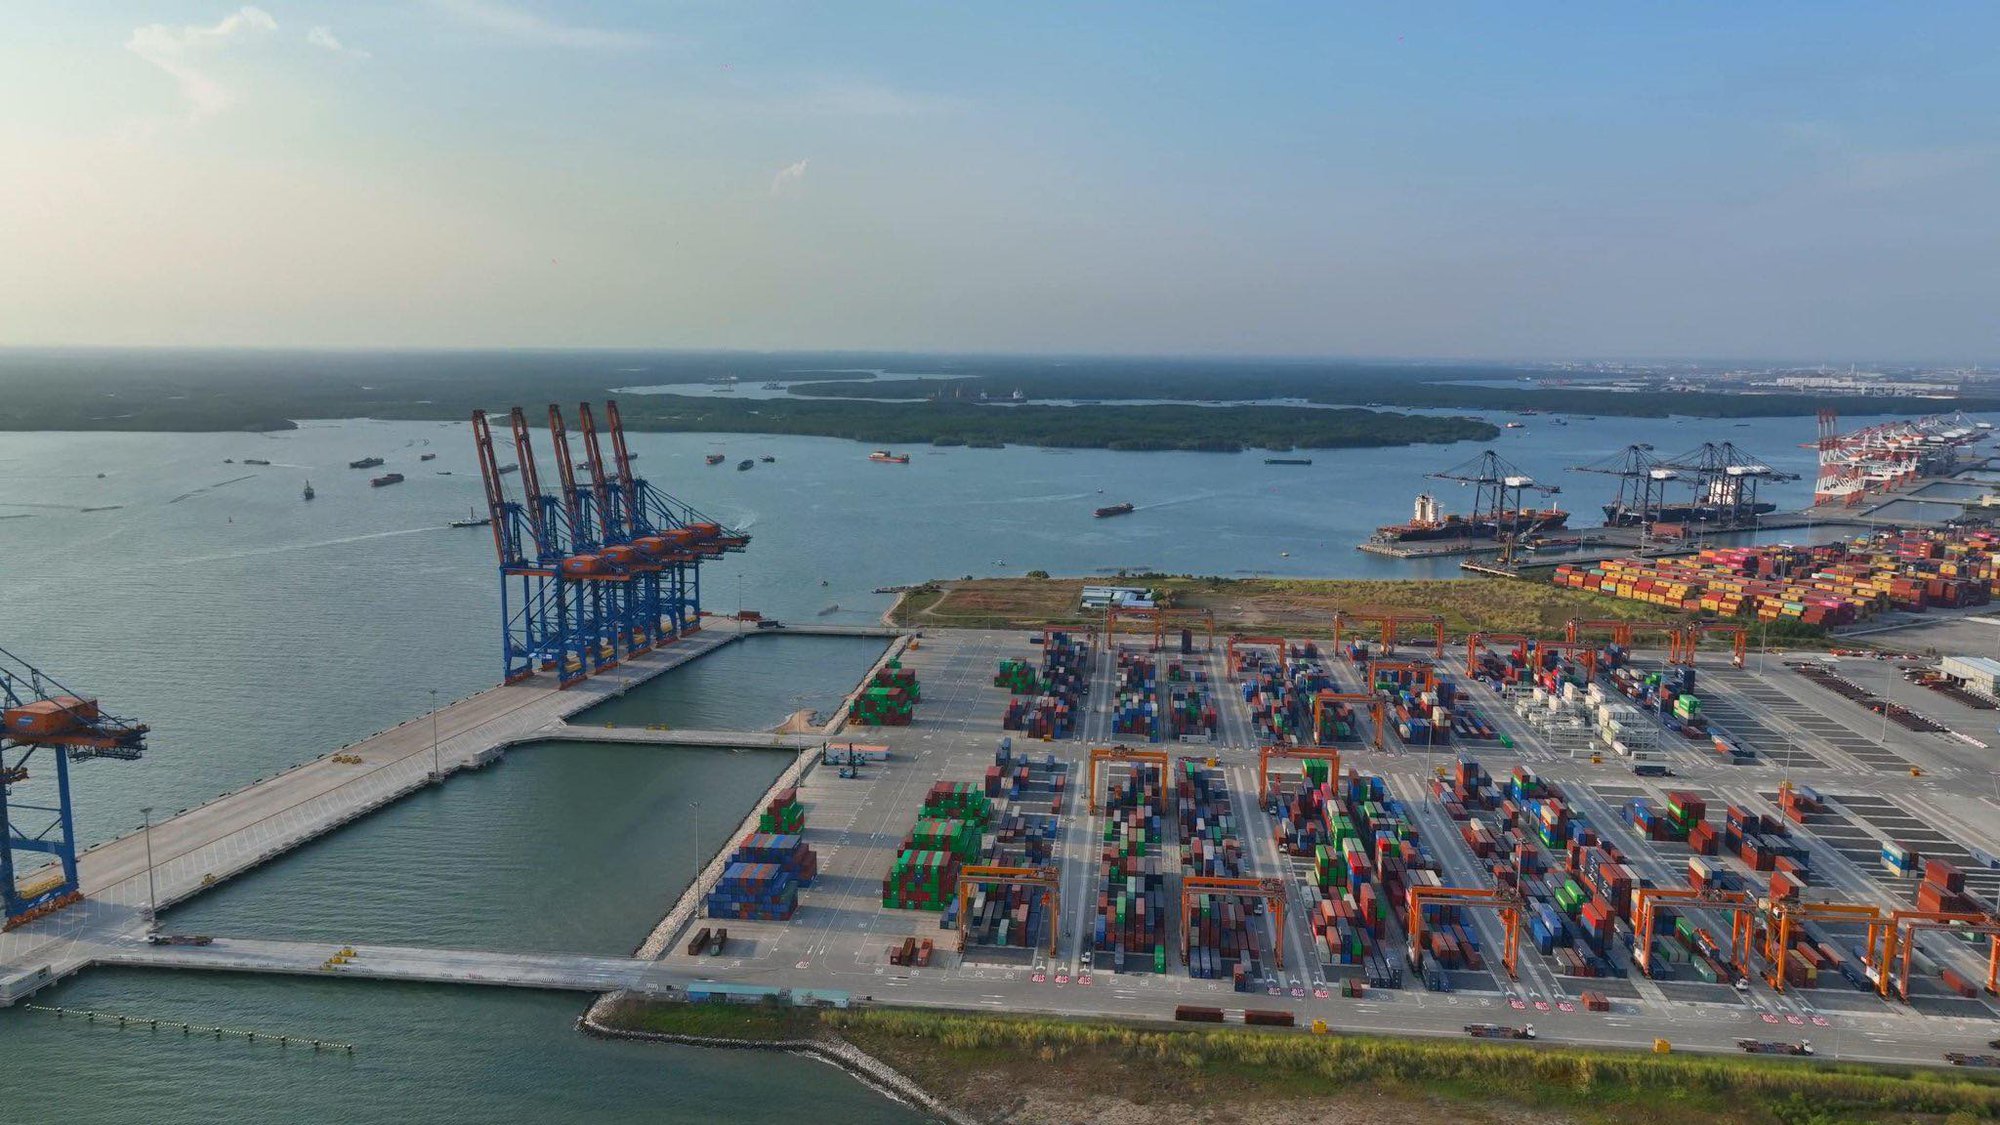 Cận cảnh siêu tàu container lớn nhất thế giới tại Bà Rịa - Vũng Tàu - Ảnh 2.